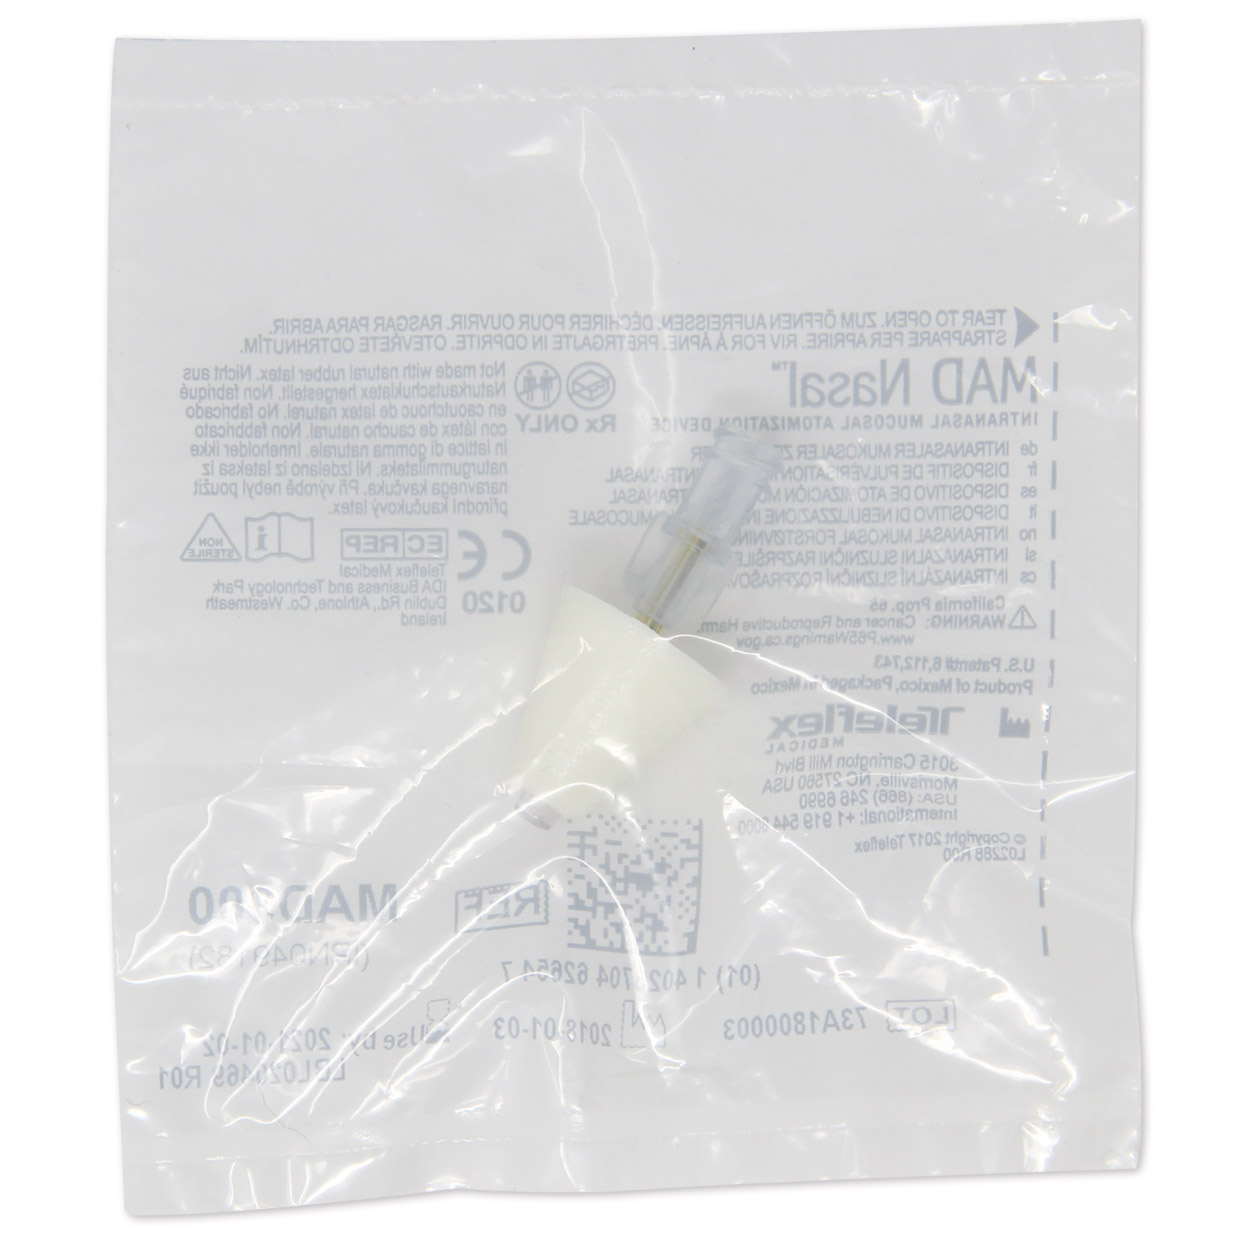 MAD 300 Nasalzerstäuber, einzelnd steril verpackt - Packung à 25 Stück